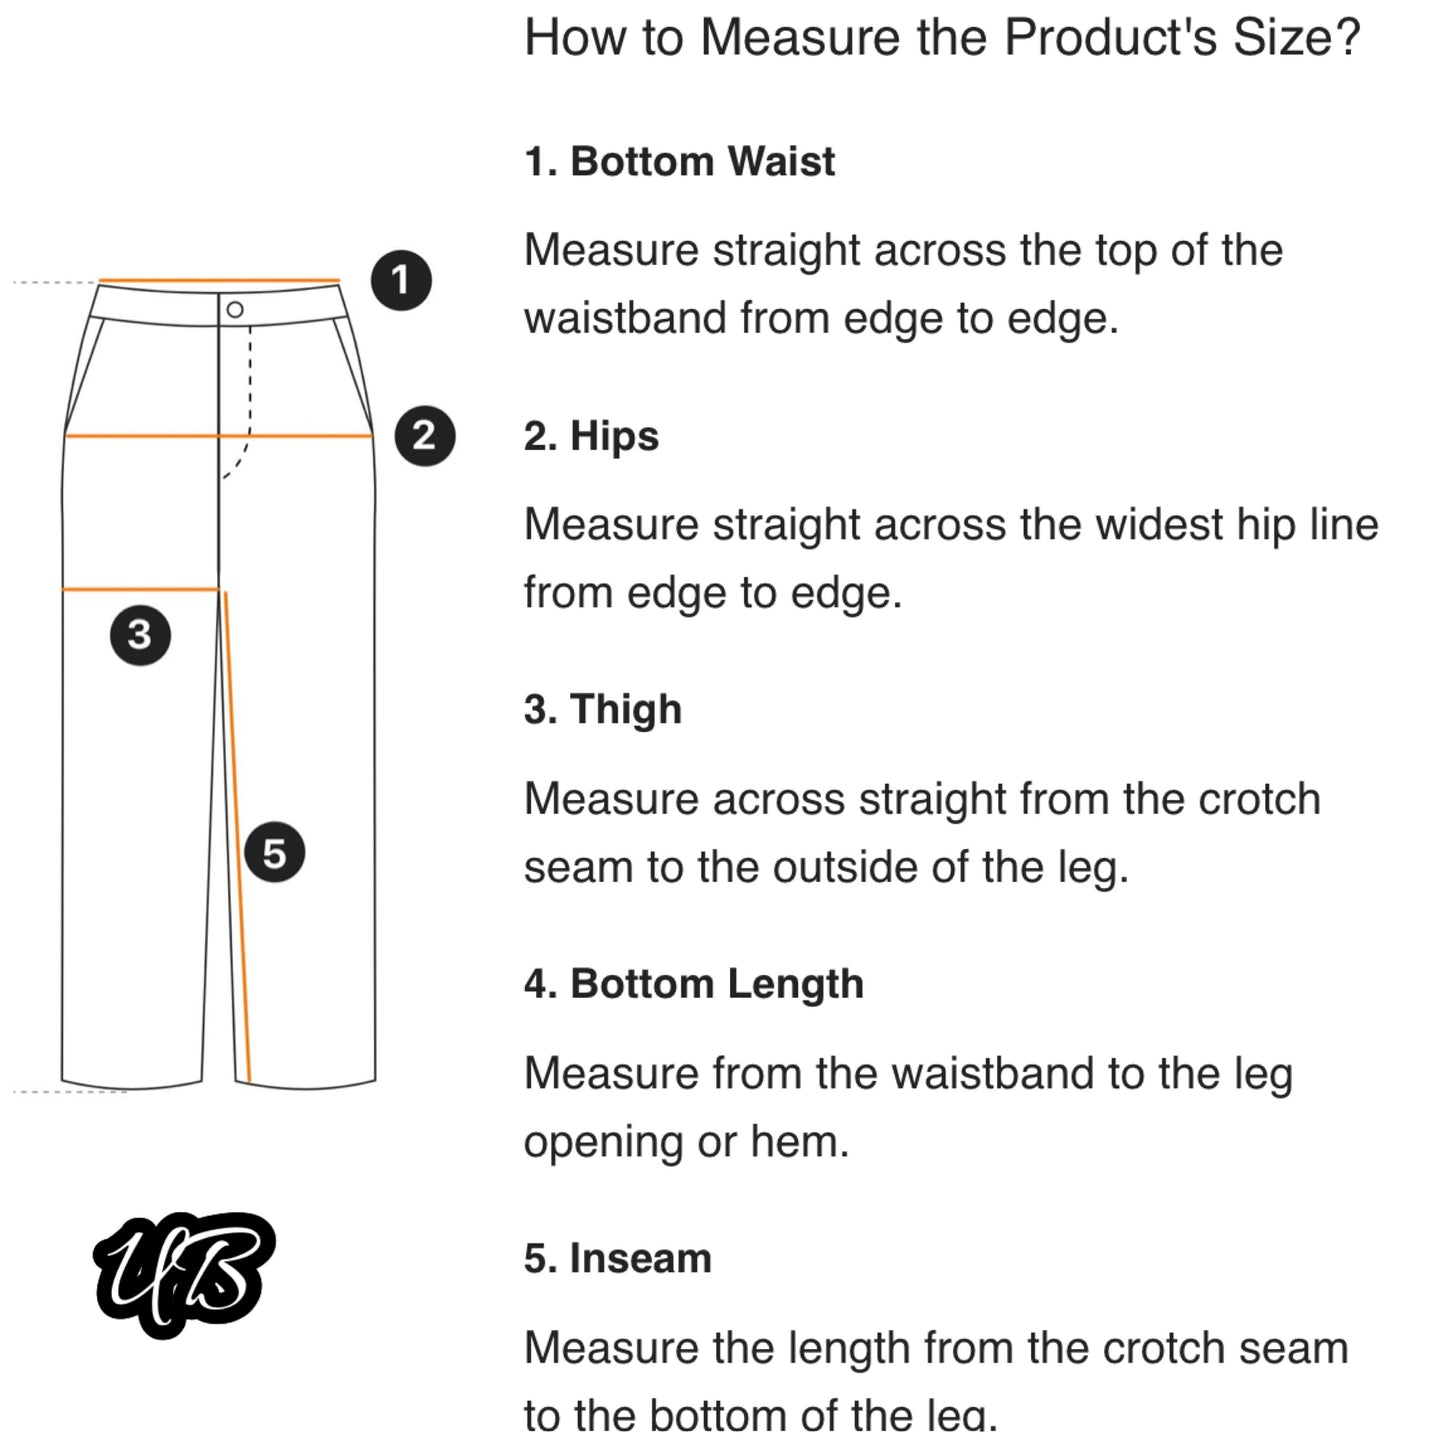 PETITE Solid Wide Leg Pants - Four Color Choices (US Sizes 0 - 10)